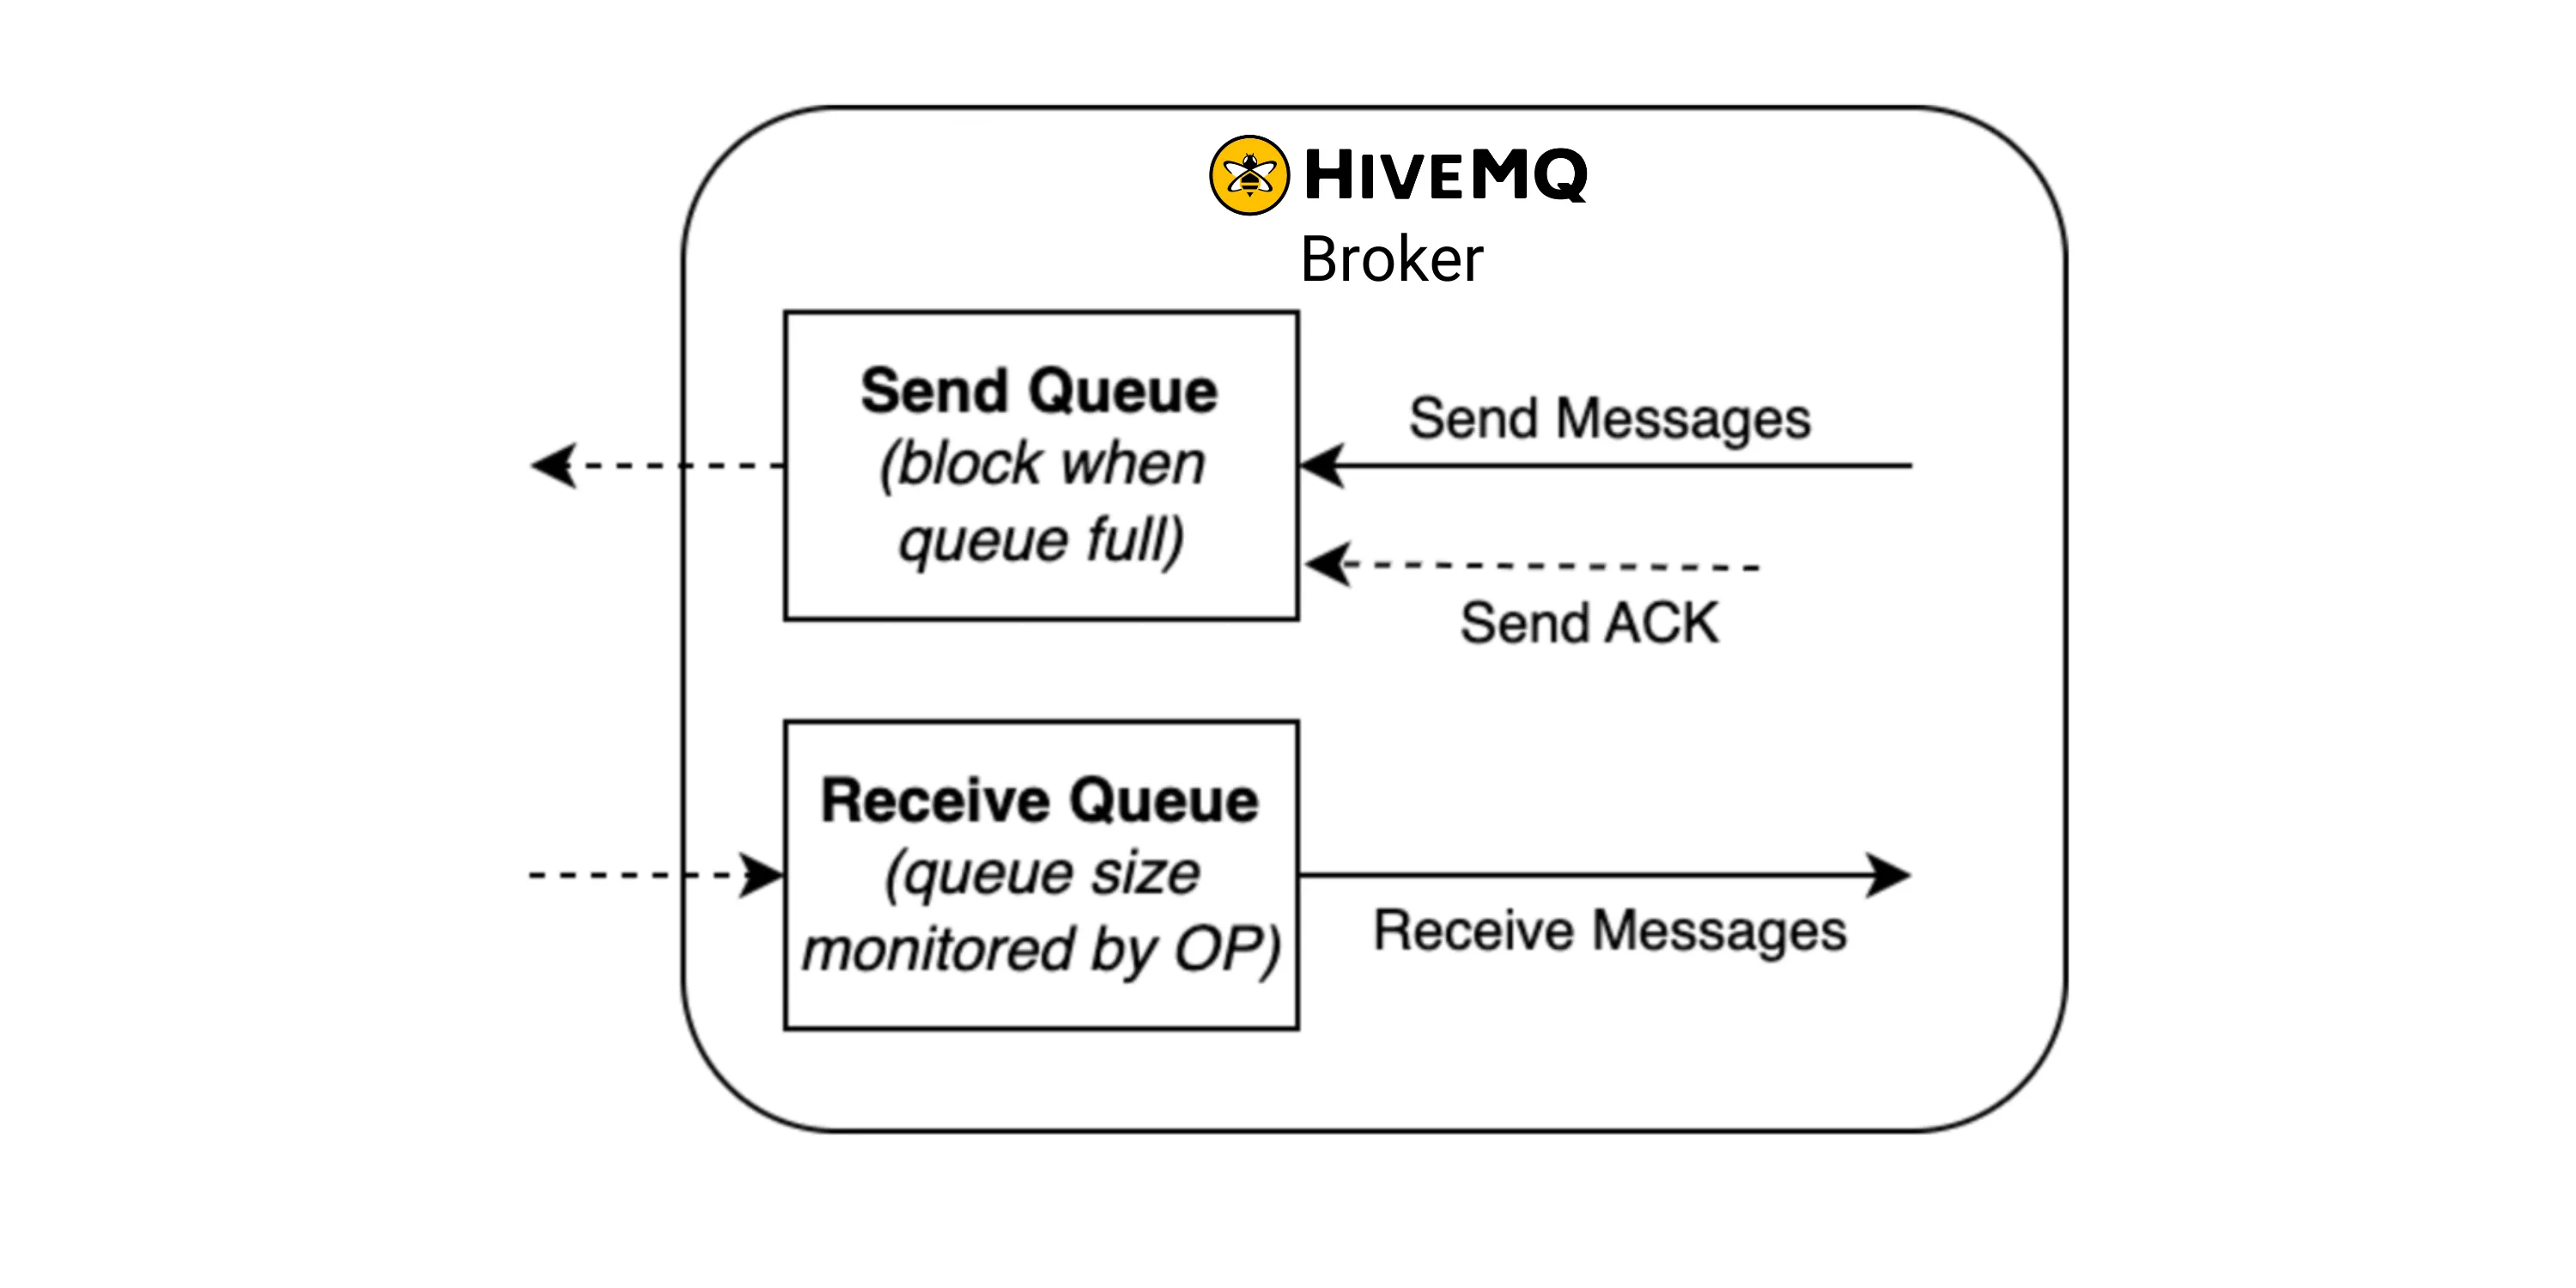 HiveMQ Broker Sending and Receiving Queue